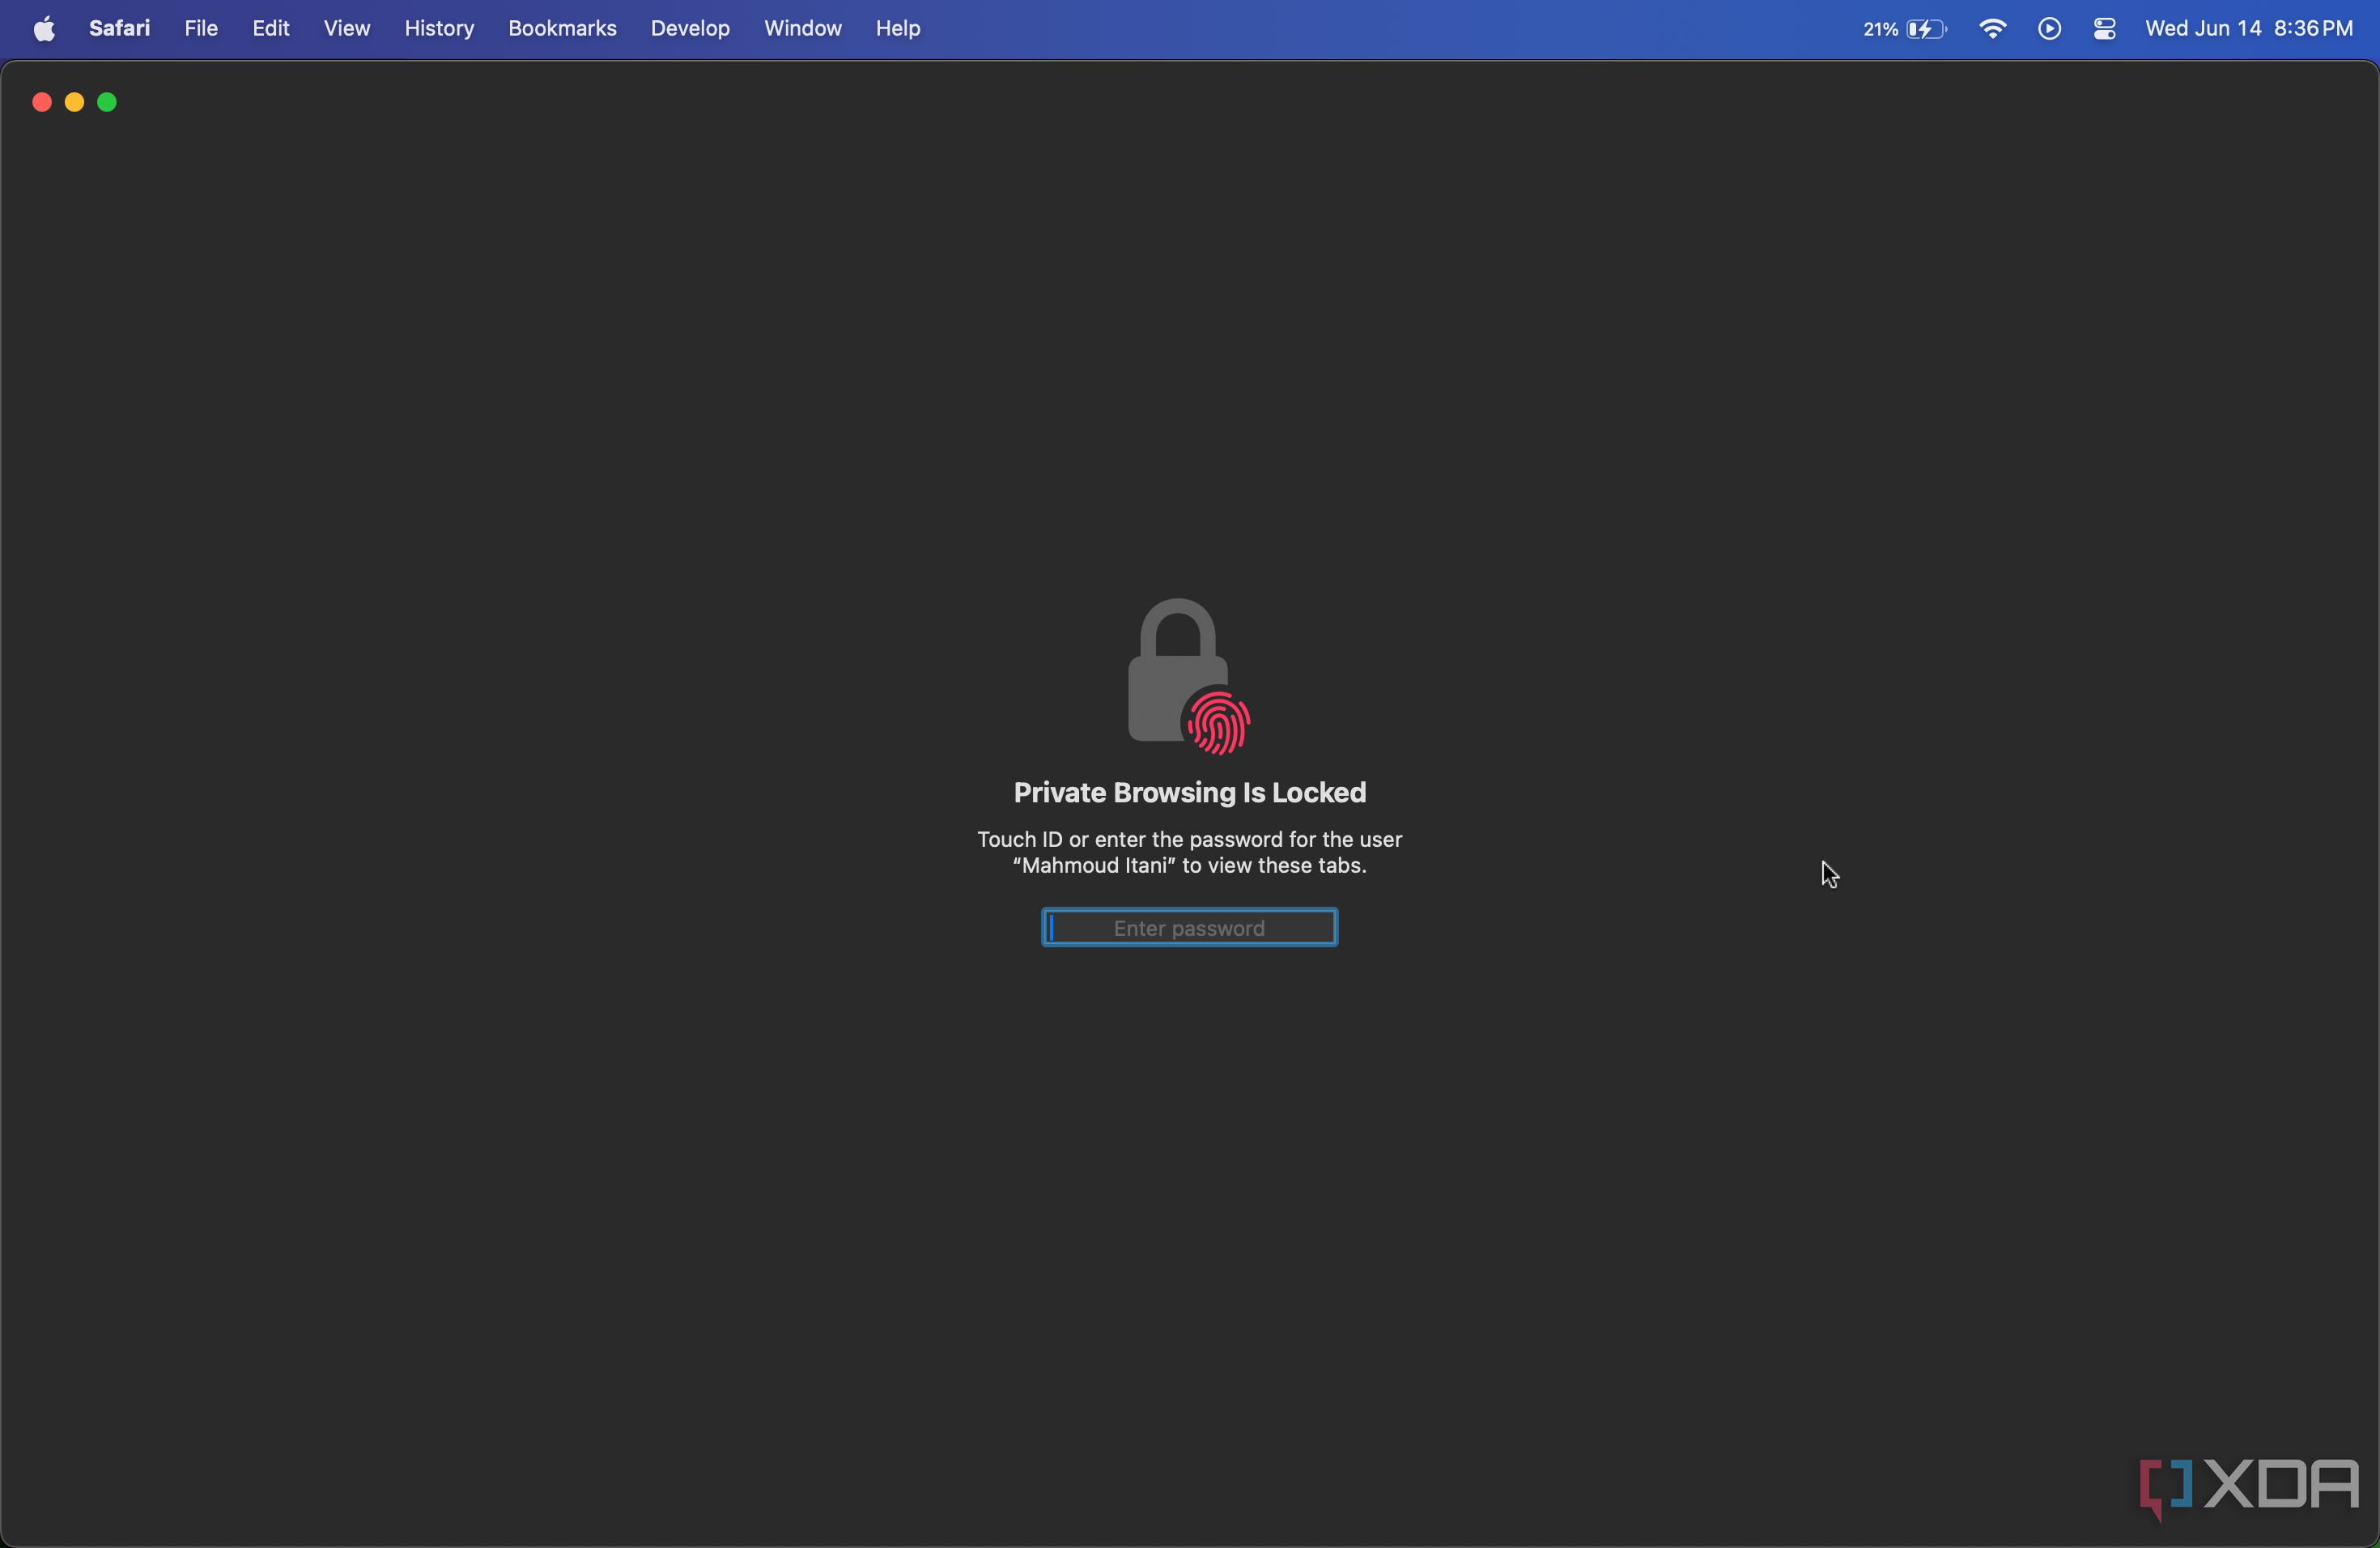 Ventana privada de Safari bloqueada que requiere contraseña o Touch ID